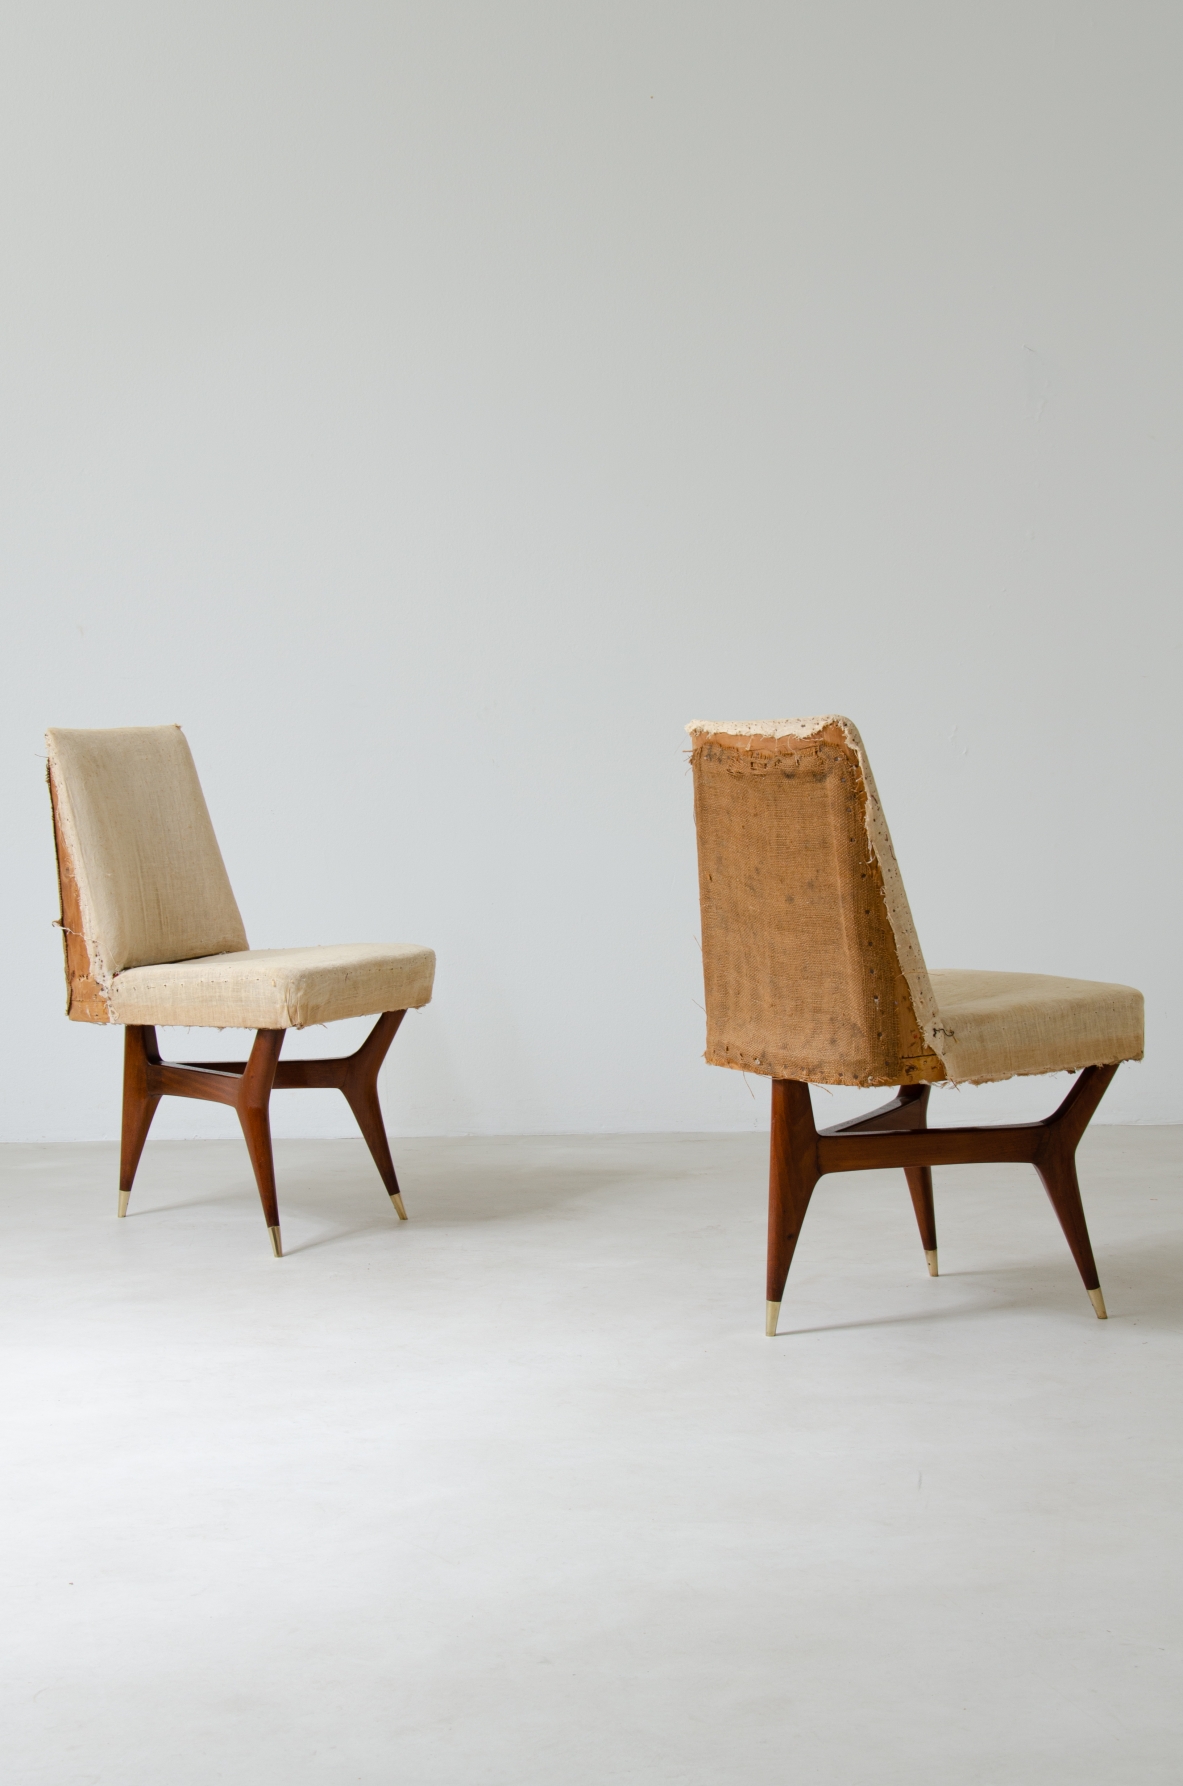 Melchiorre Bega (1898-1976)  Raro set di sei sedie in legno con puntali in ottone e rivestimento in tessuto.  Italia, 1956